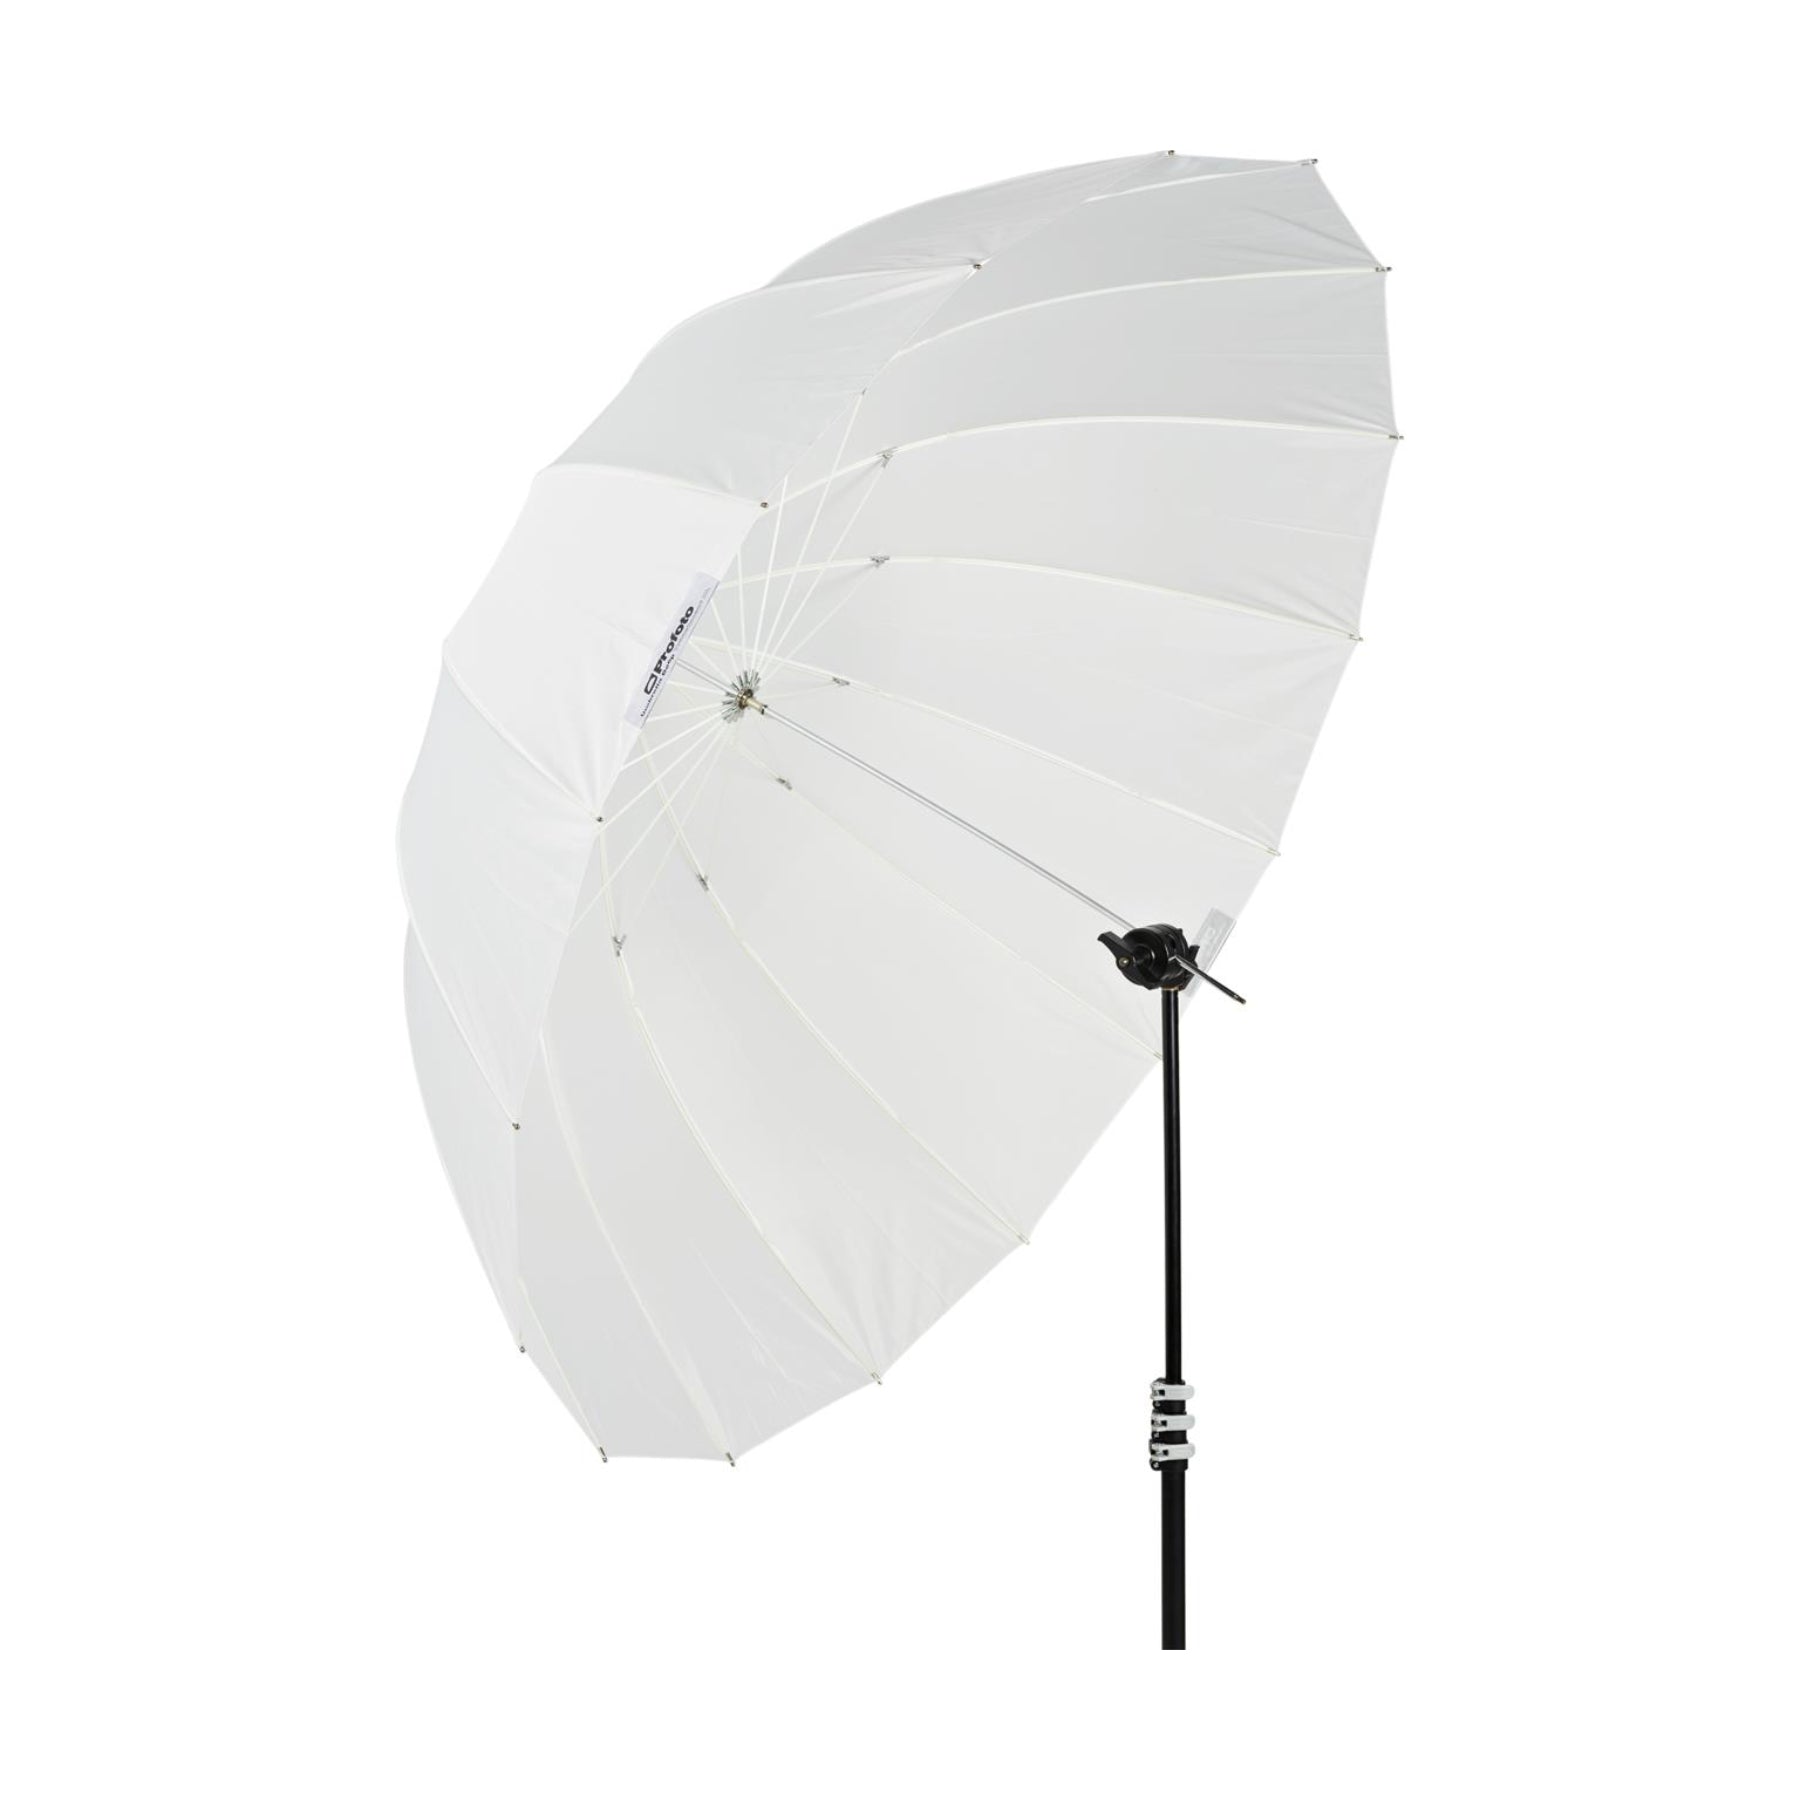 Profoto Translucent Umbrella Deep XL for hire